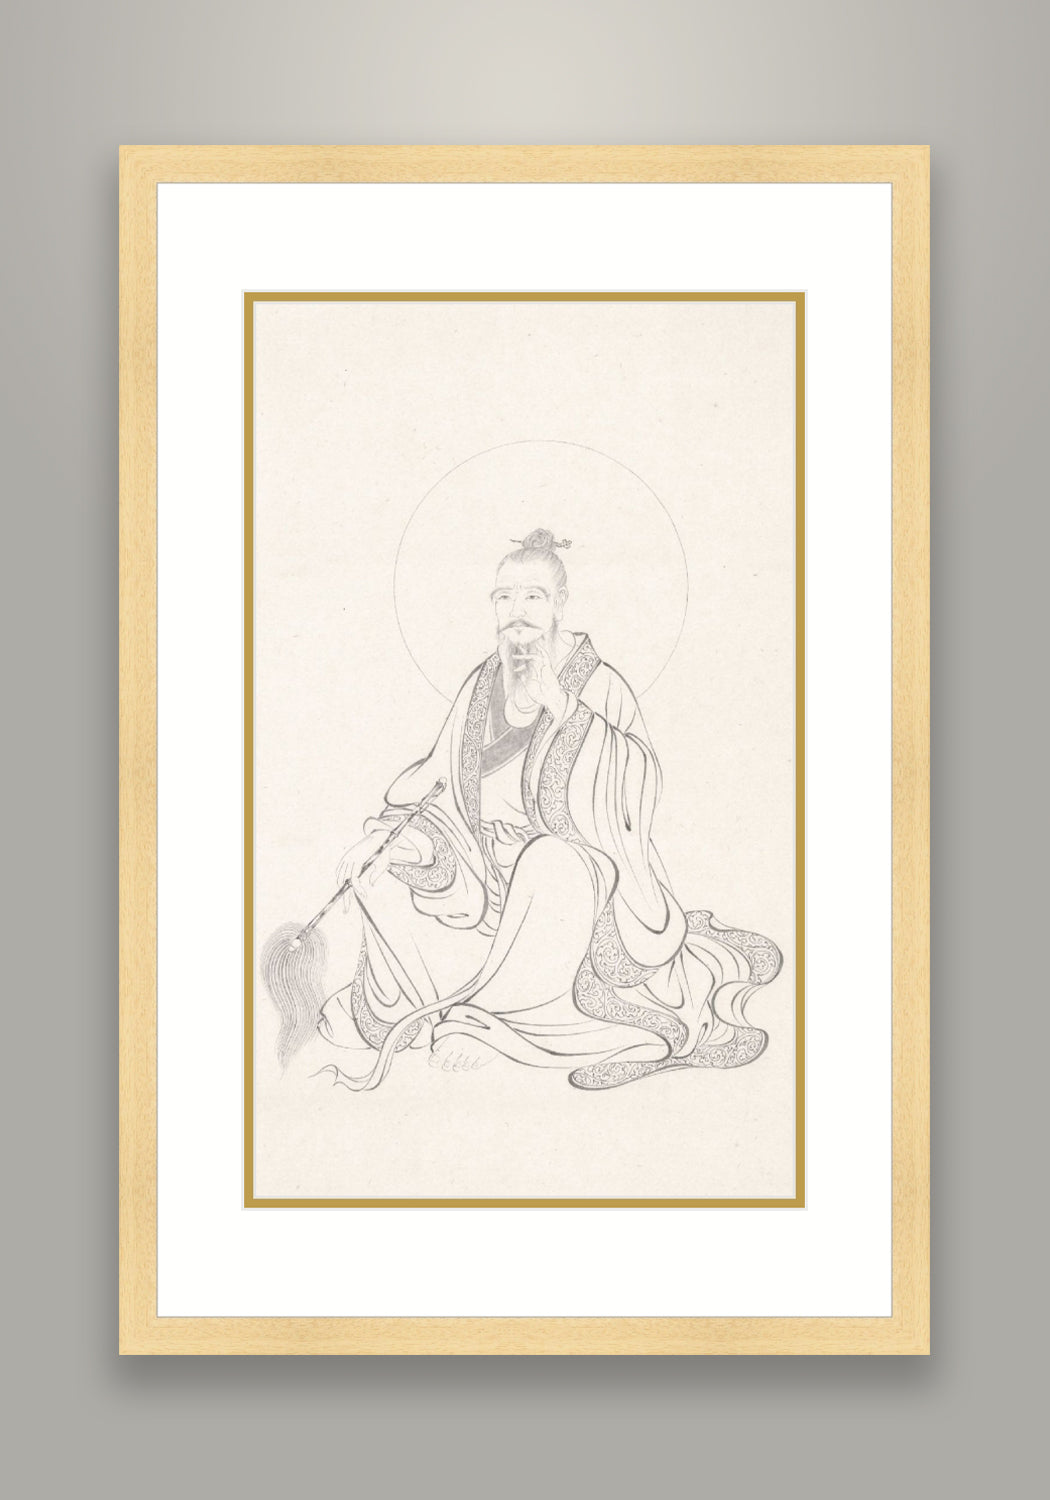 Portrait of the Tai Chi Grandmaster